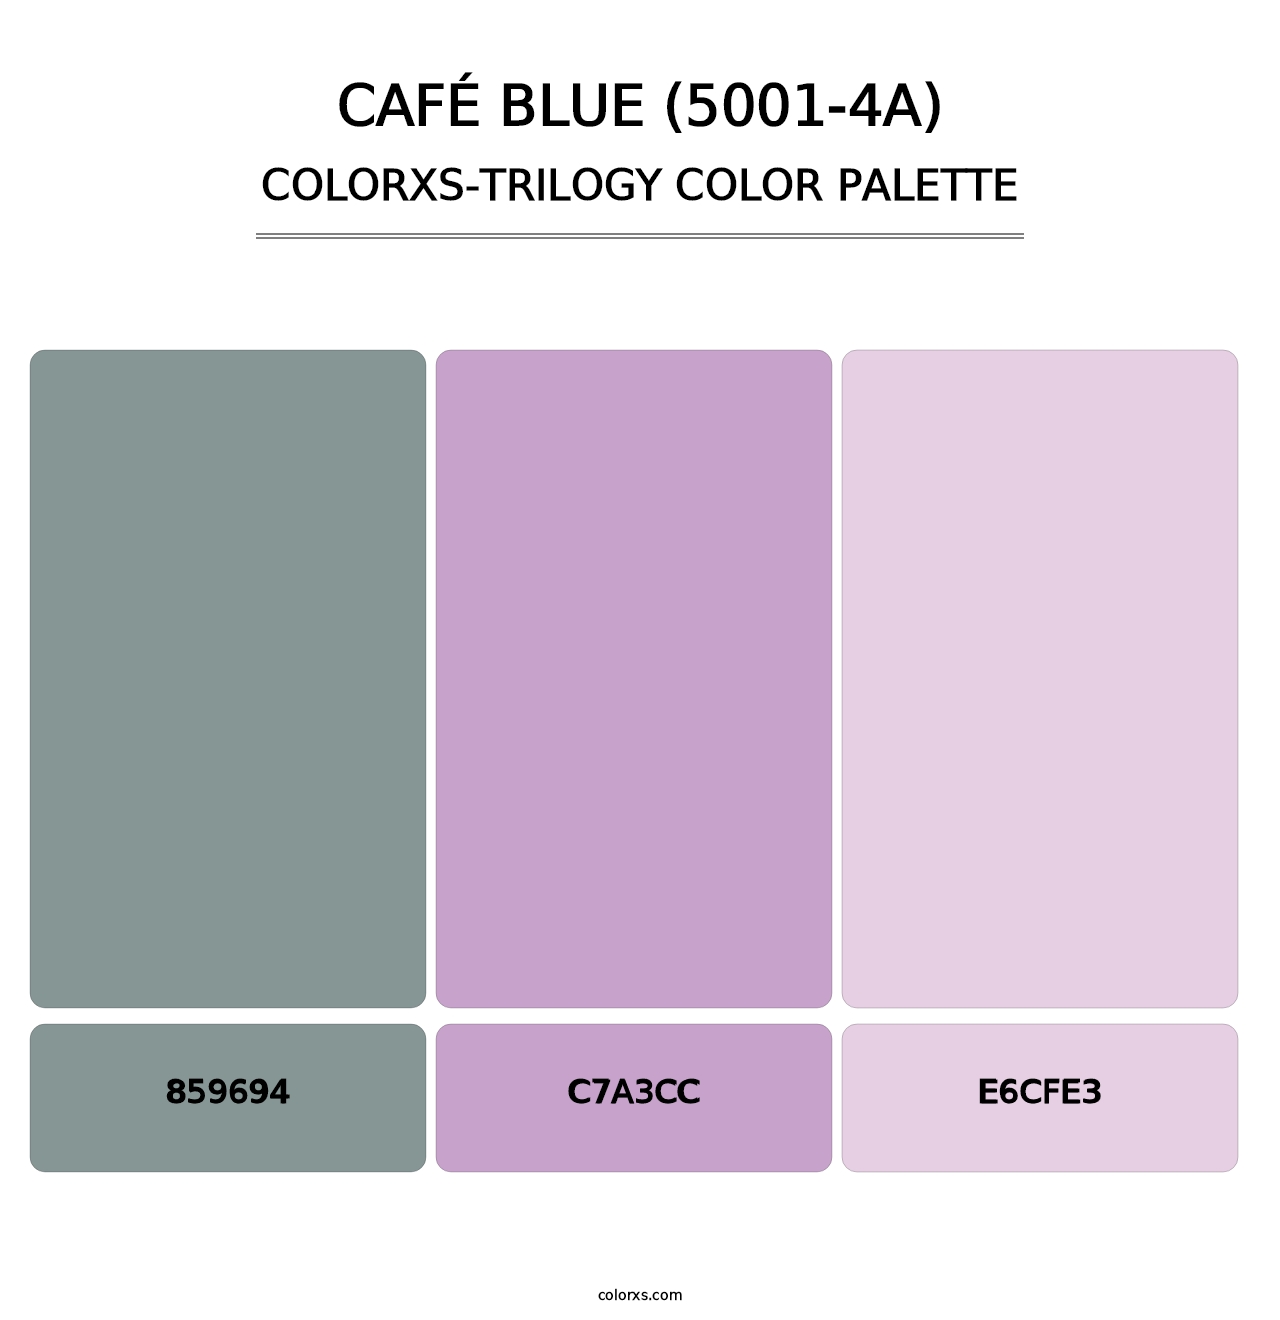 Café Blue (5001-4A) - Colorxs Trilogy Palette